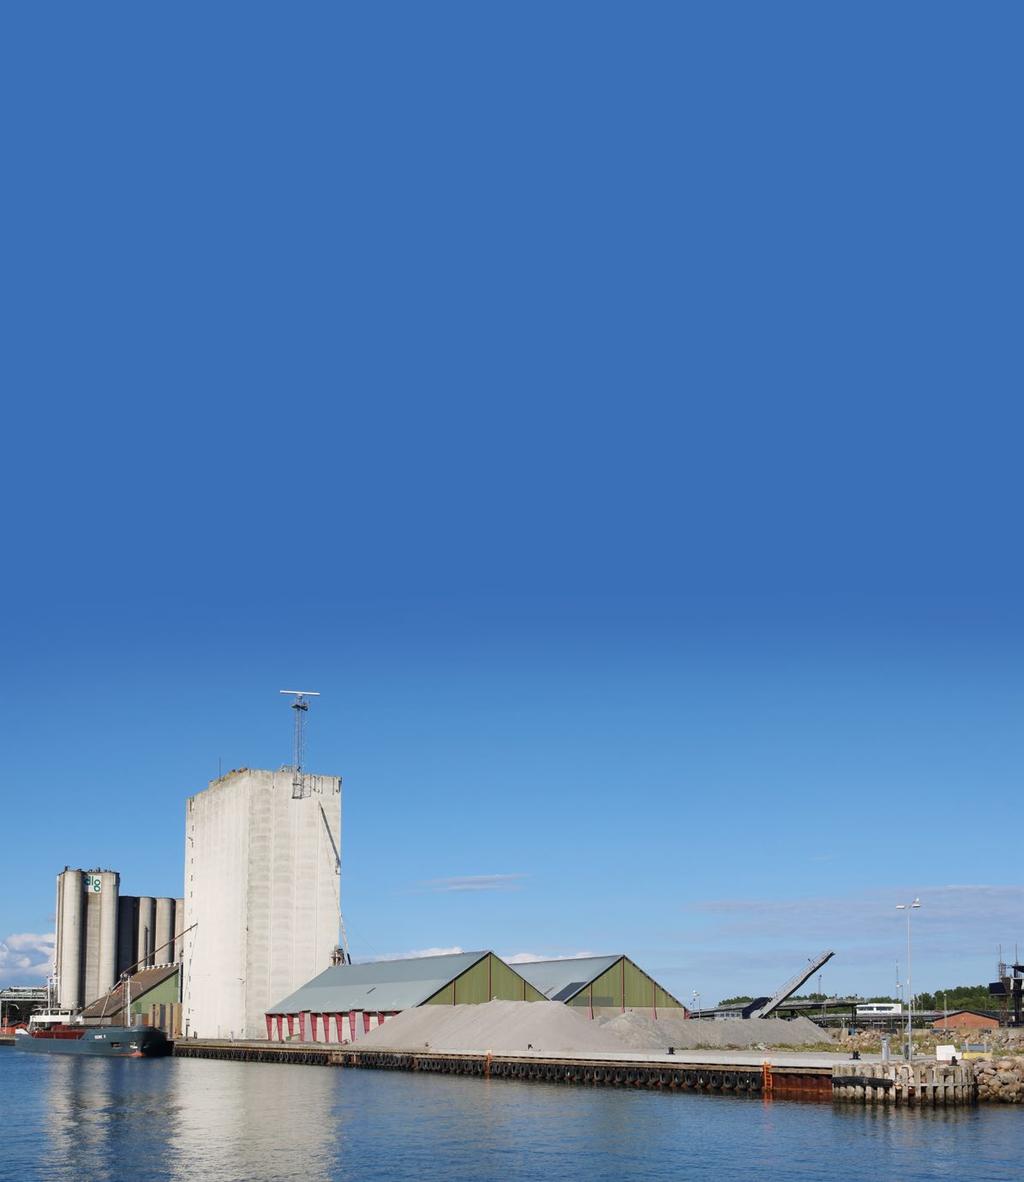 Erhvervshavnene Nakskov Havn & Rødbyhavn Trafikhavn Femern Belt projektet nærmer sig og tilbuddene udvikles fortsat i Rødbyhavn Trafikhavn.